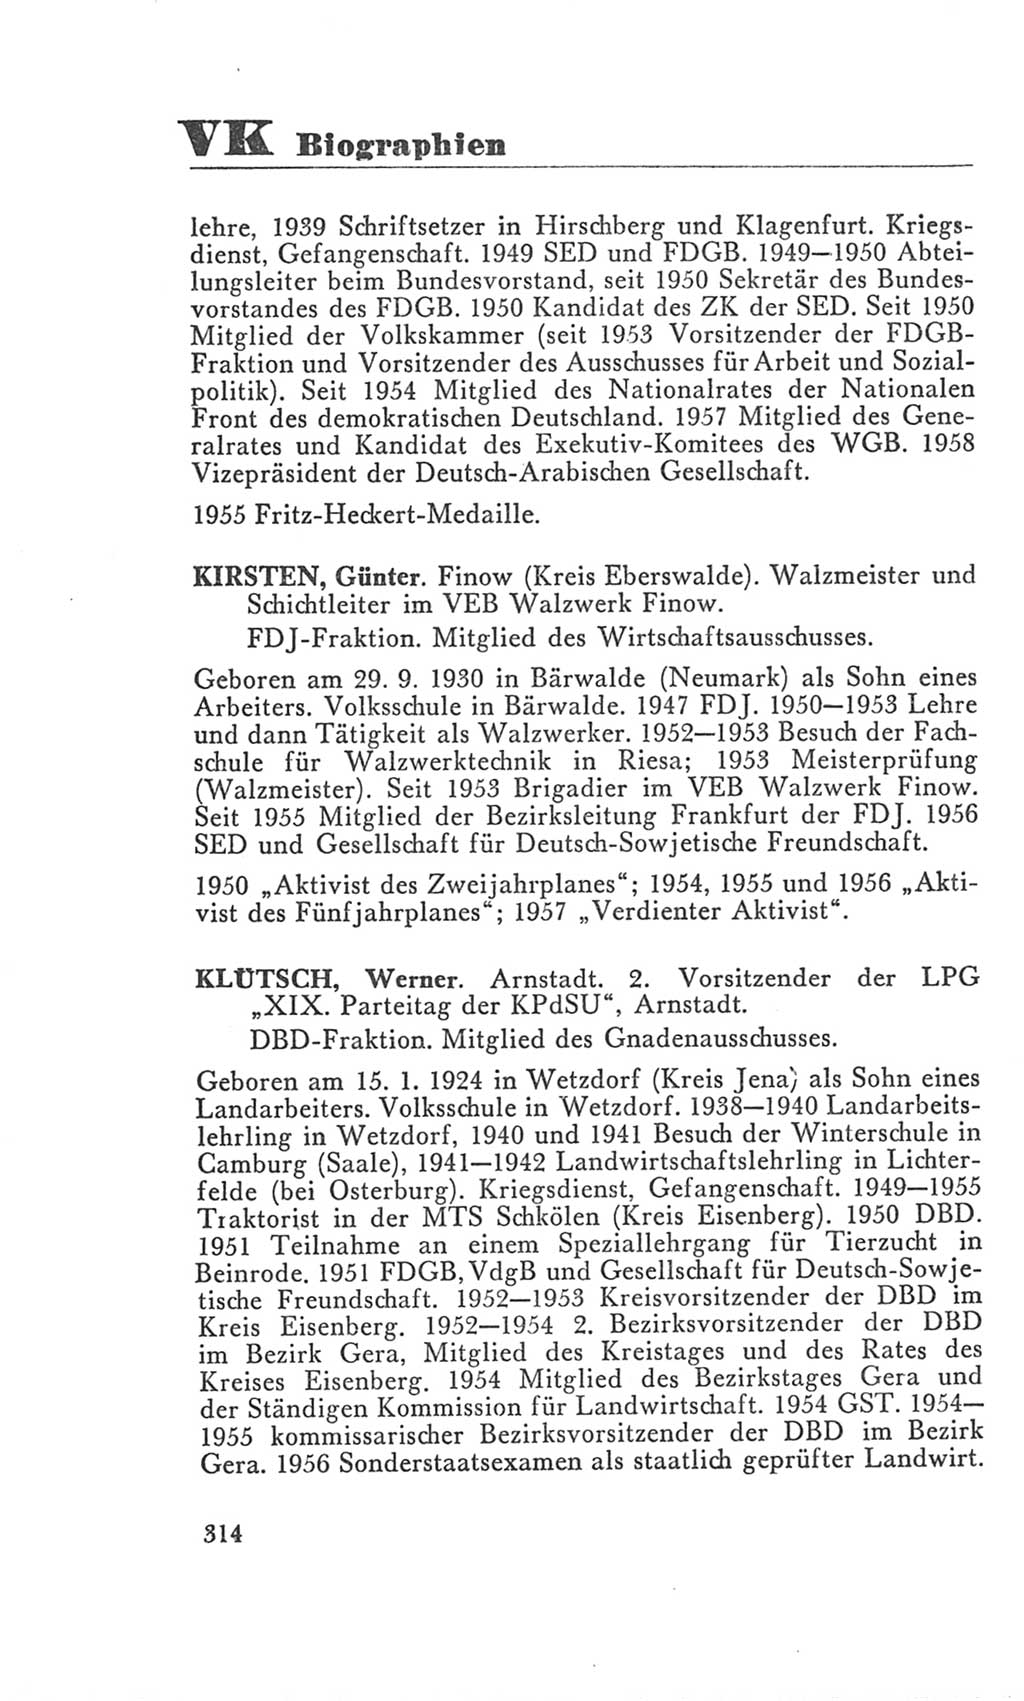 Handbuch der Volkskammer (VK) der Deutschen Demokratischen Republik (DDR), 3. Wahlperiode 1958-1963, Seite 314 (Hdb. VK. DDR 3. WP. 1958-1963, S. 314)